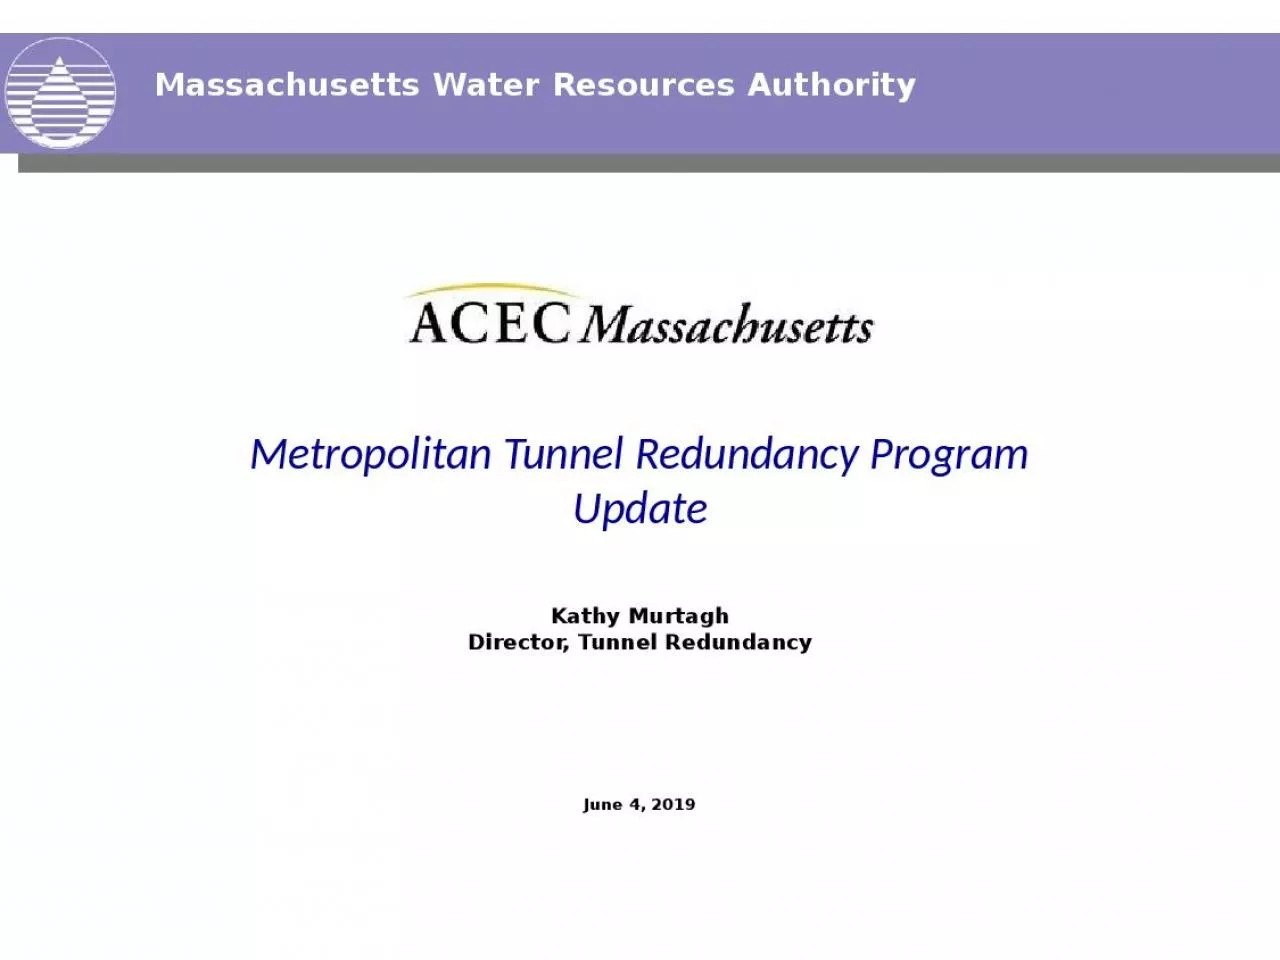 Metropolitan Tunnel Redundancy Program Update